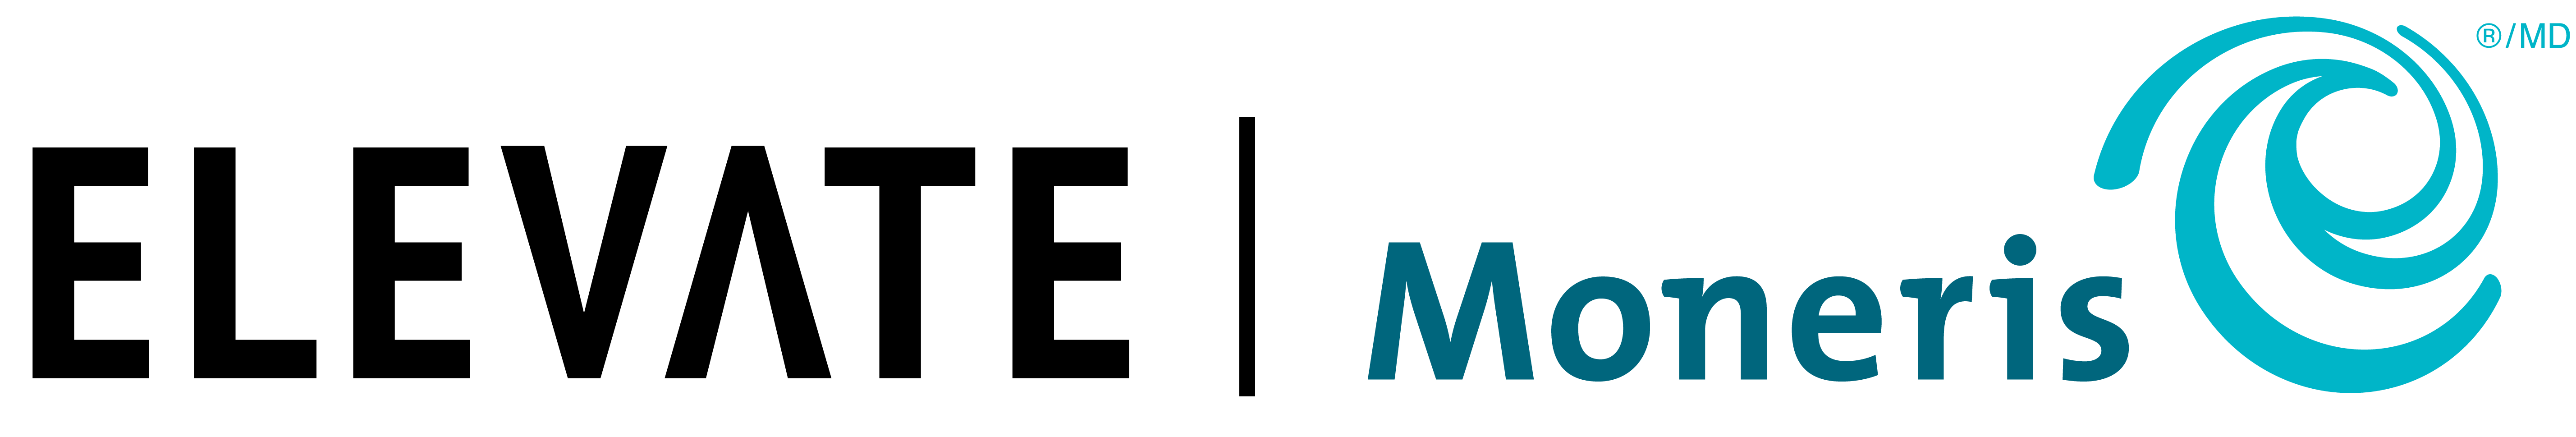 Elevate+Moneris Logo